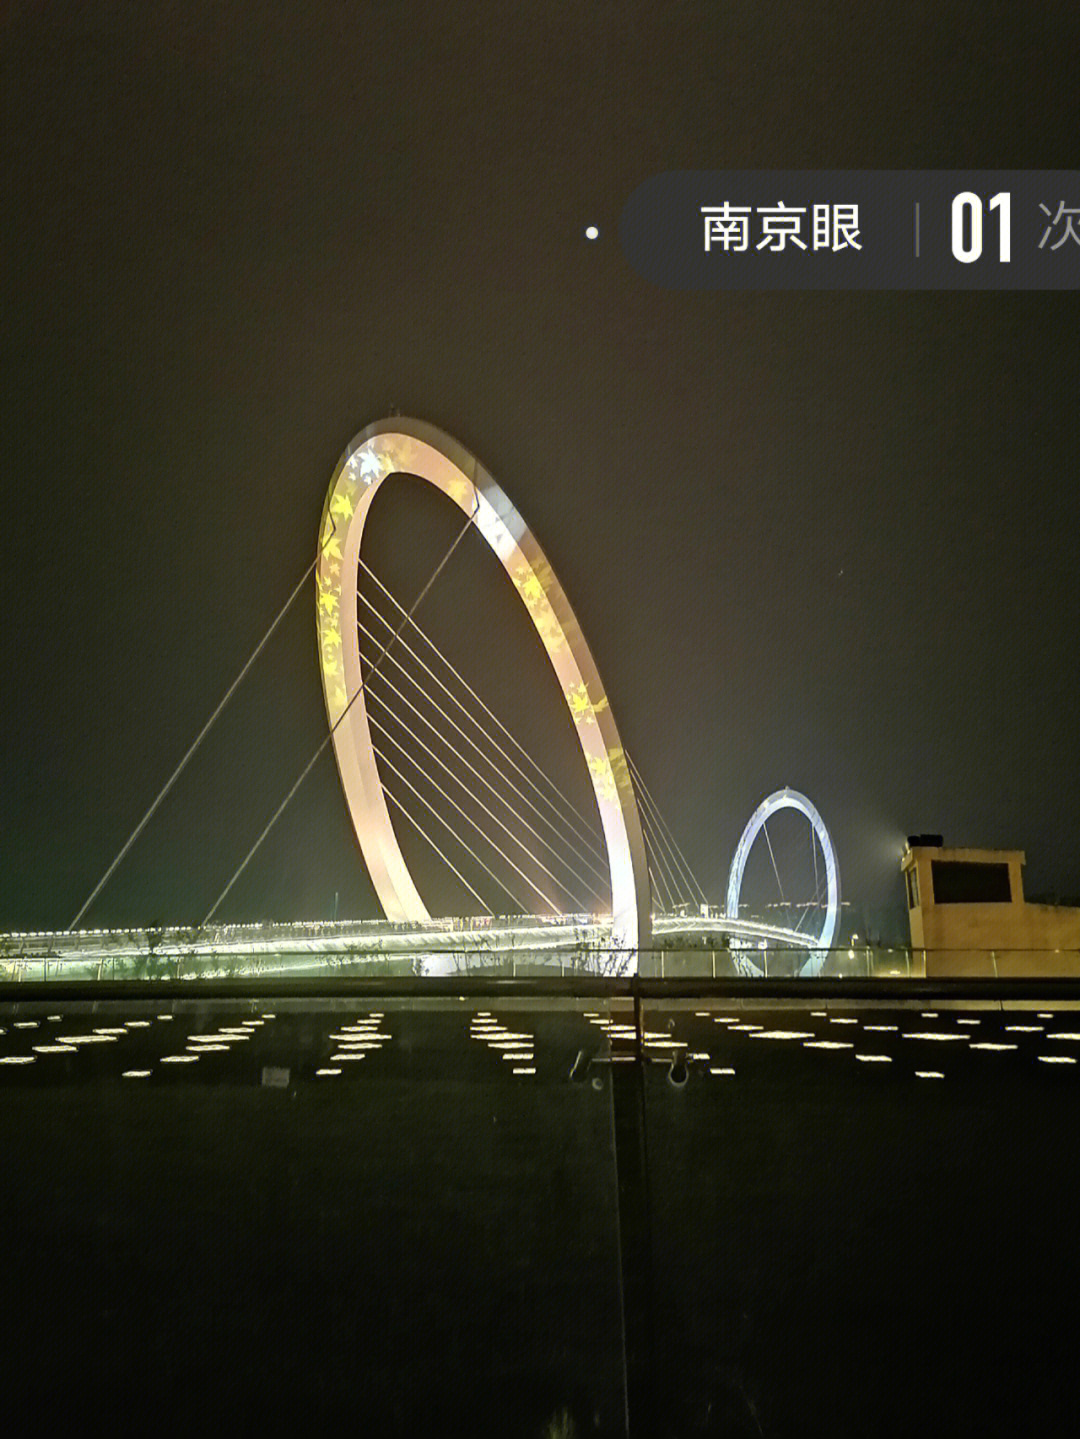 南京眼步行桥设计者图片